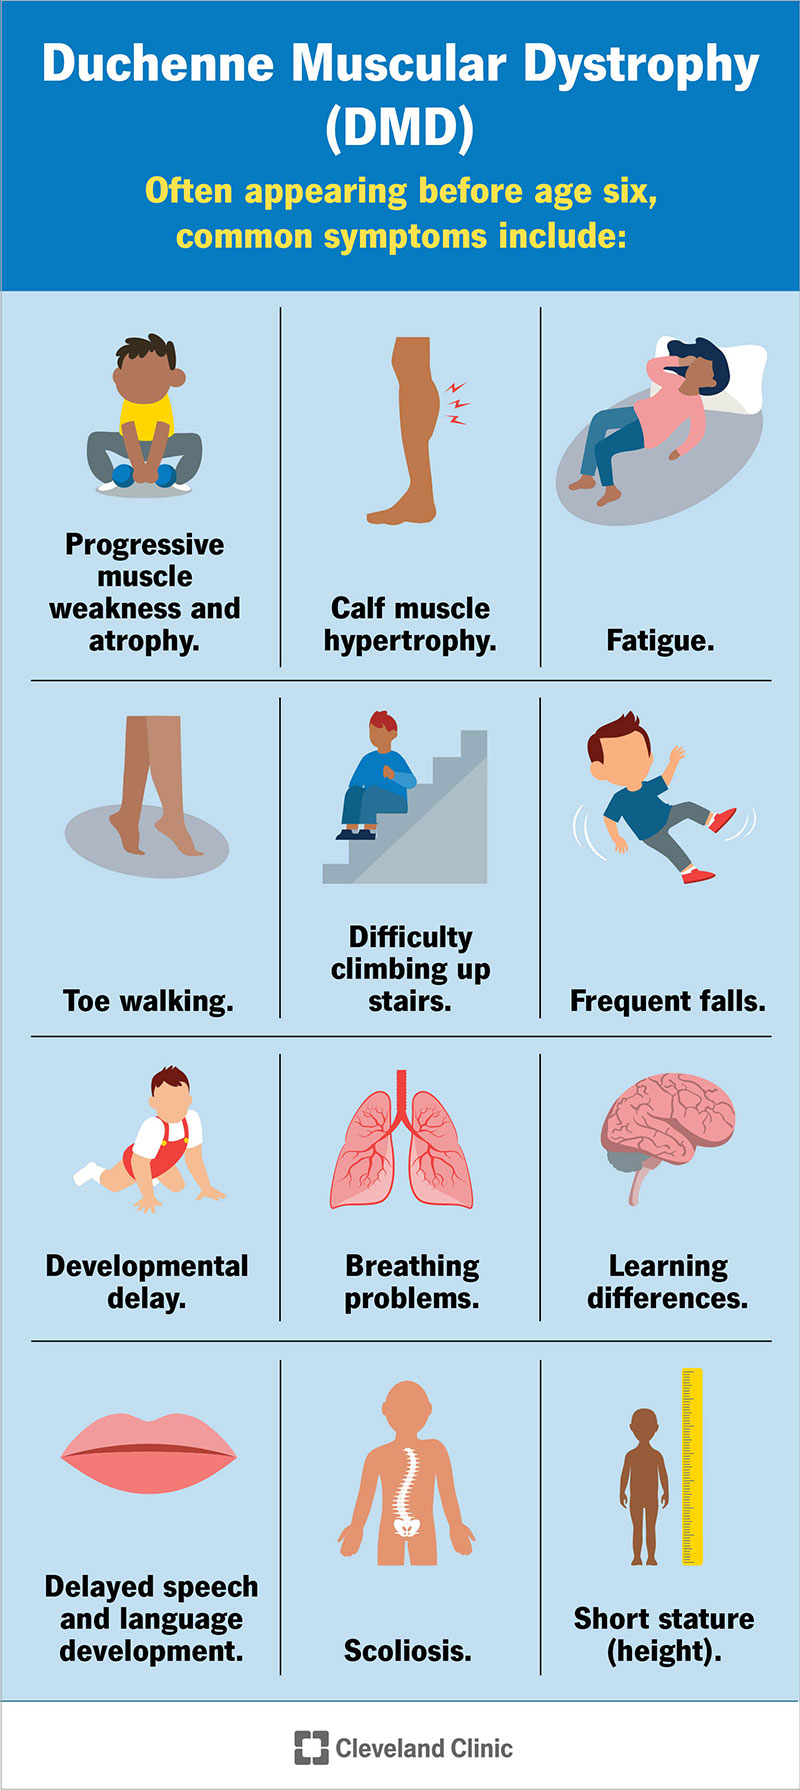 I sintomi della DMD compaiono spesso prima dei 6 anni e comprendono affaticamento, difficoltà a salire le scale, cadute frequenti, ritardo dello sviluppo e altro ancora.